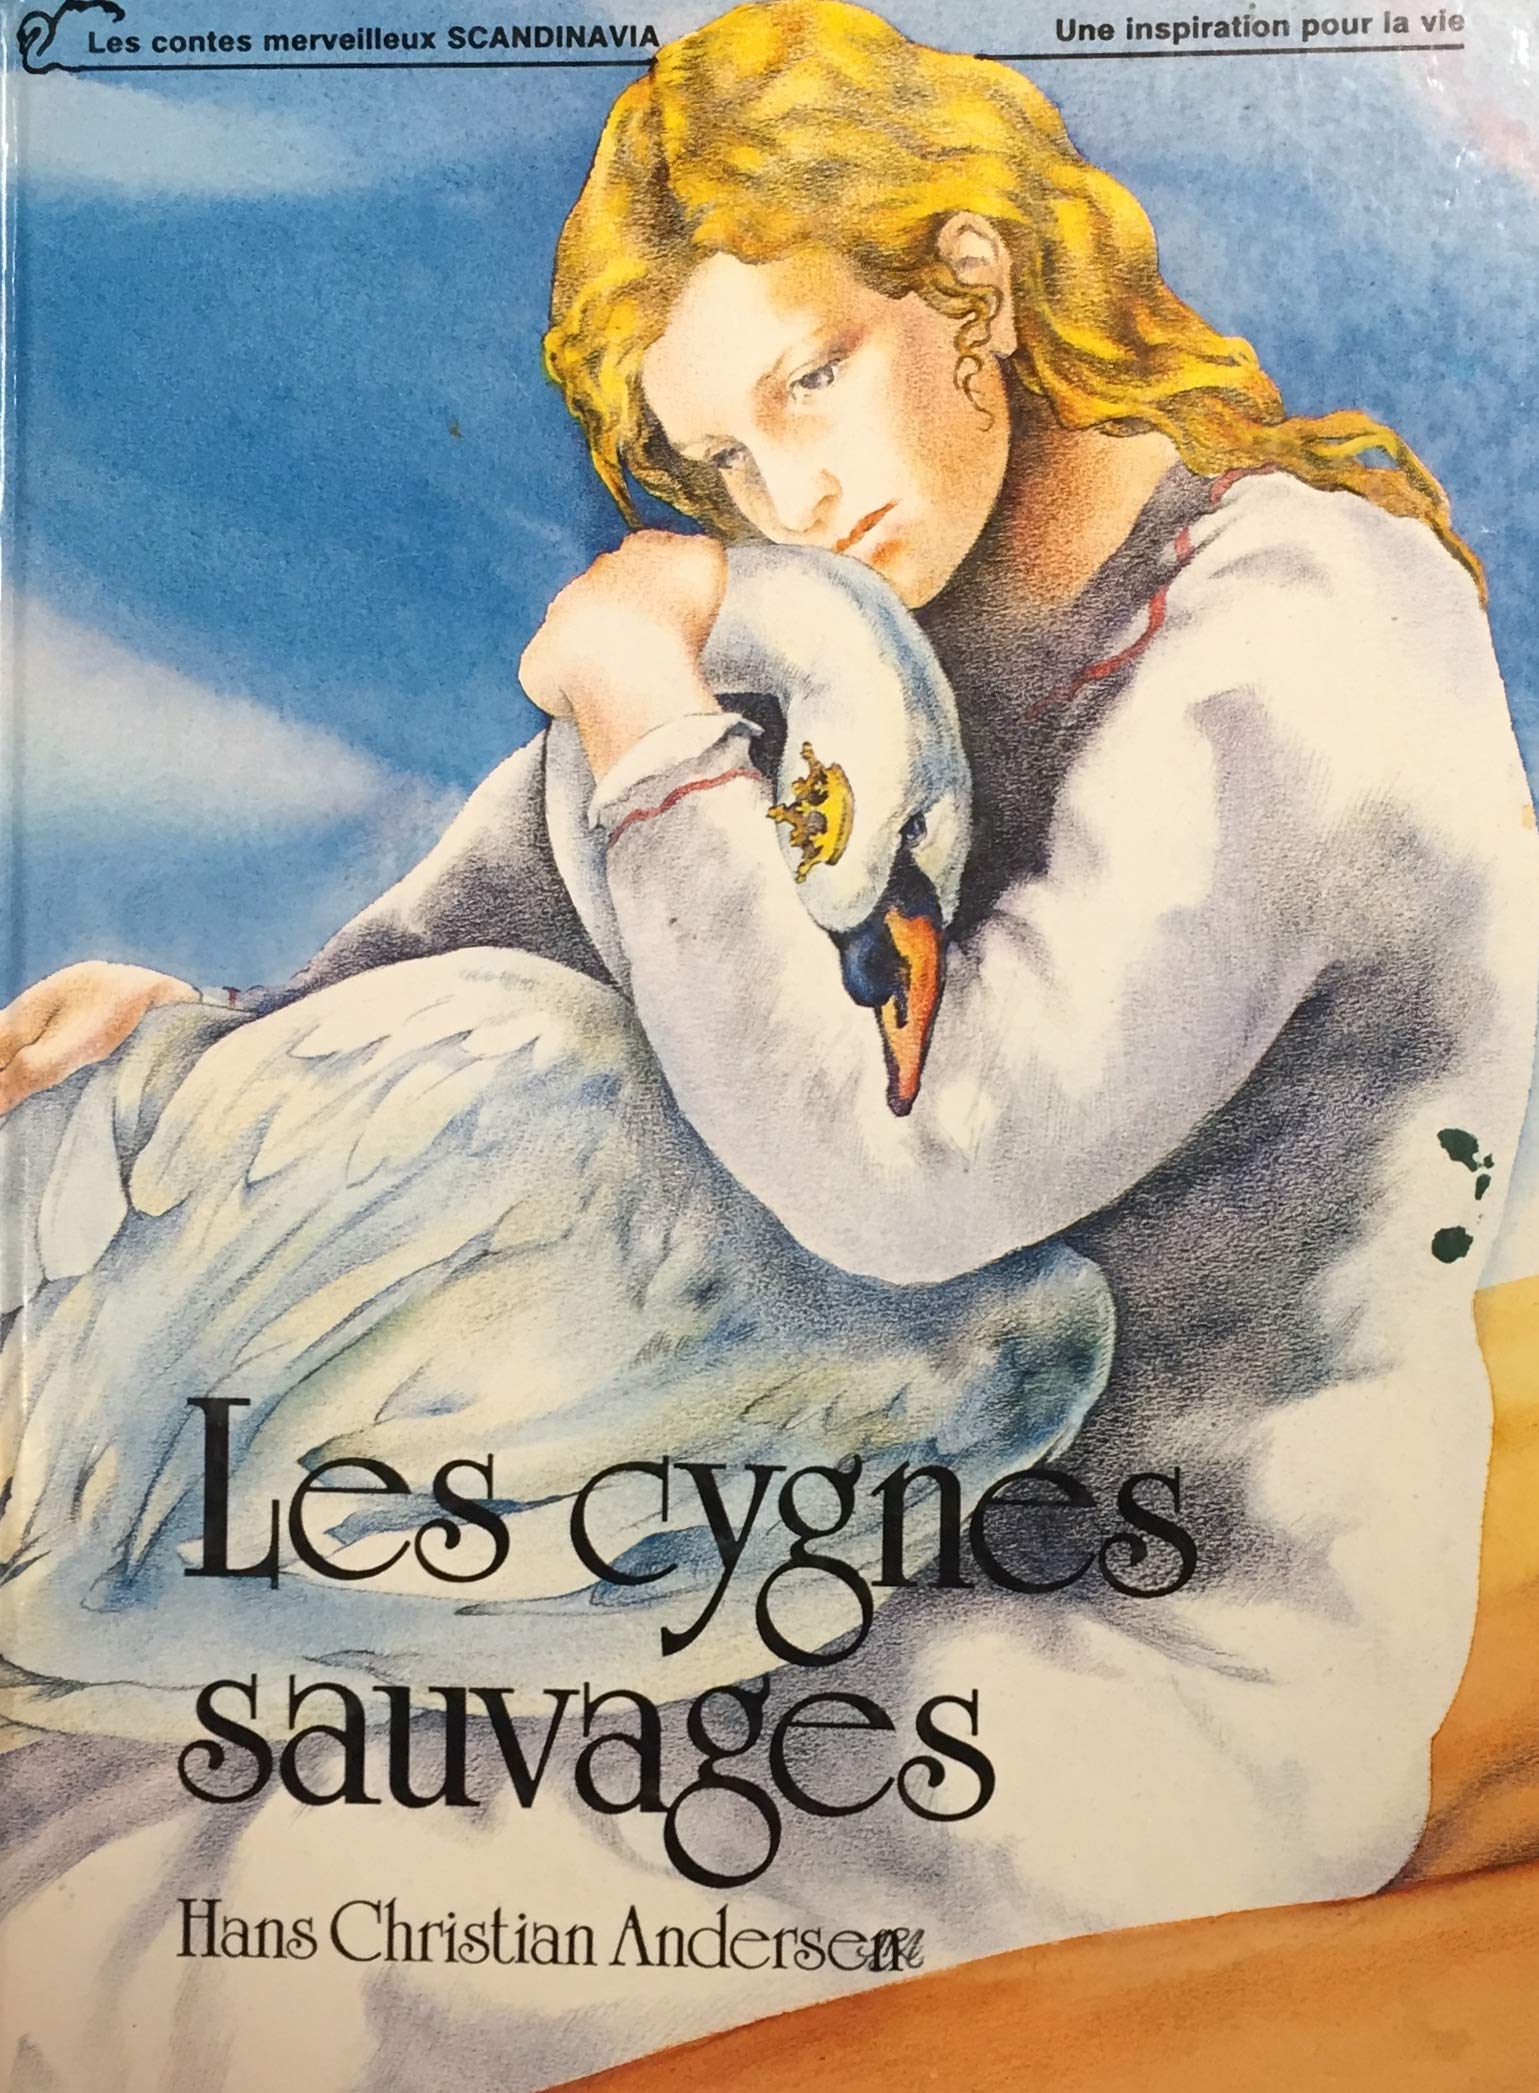 Livre ISBN 2890882160 Les contes merveilleux Scandinavia : Les cygnes sauvages (Hans Christian Andersen)